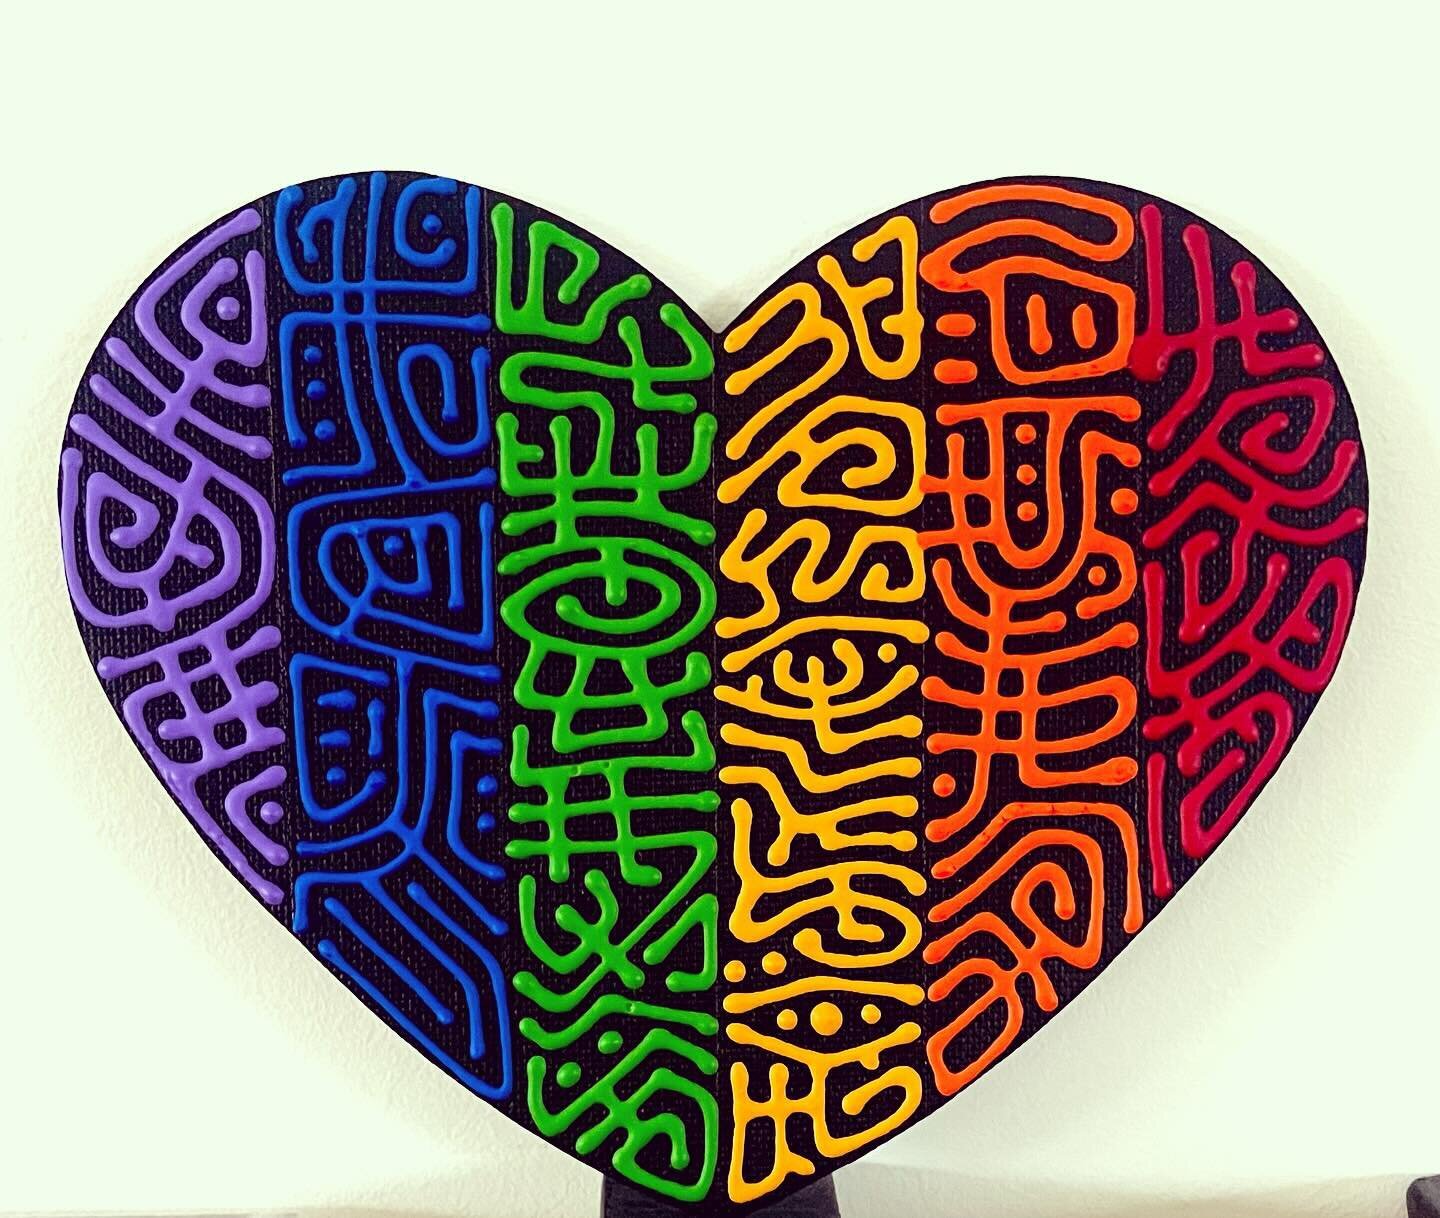 Pride Heart #prideheart #heart #heART #prideheART #pride #gaypride #gay #lgbtq #lgbtq🌈 #lgbtqpride #lgbtcommunity #melbourne #gaymelbourne